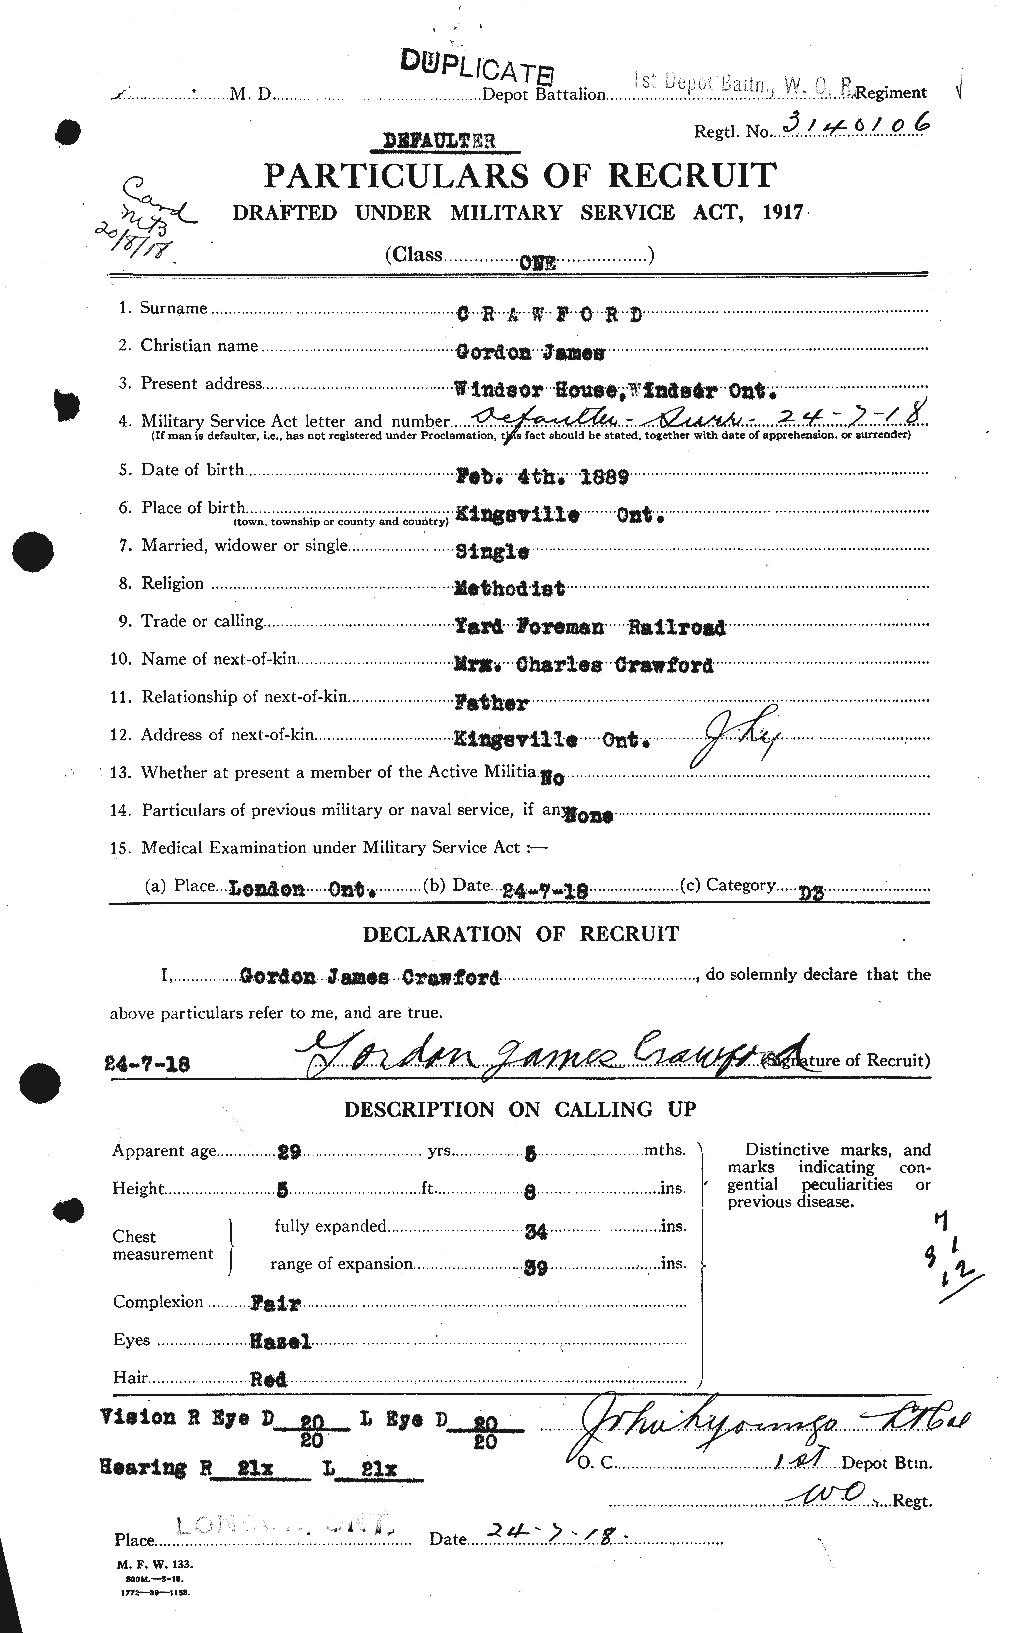 Dossiers du Personnel de la Première Guerre mondiale - CEC 060587a